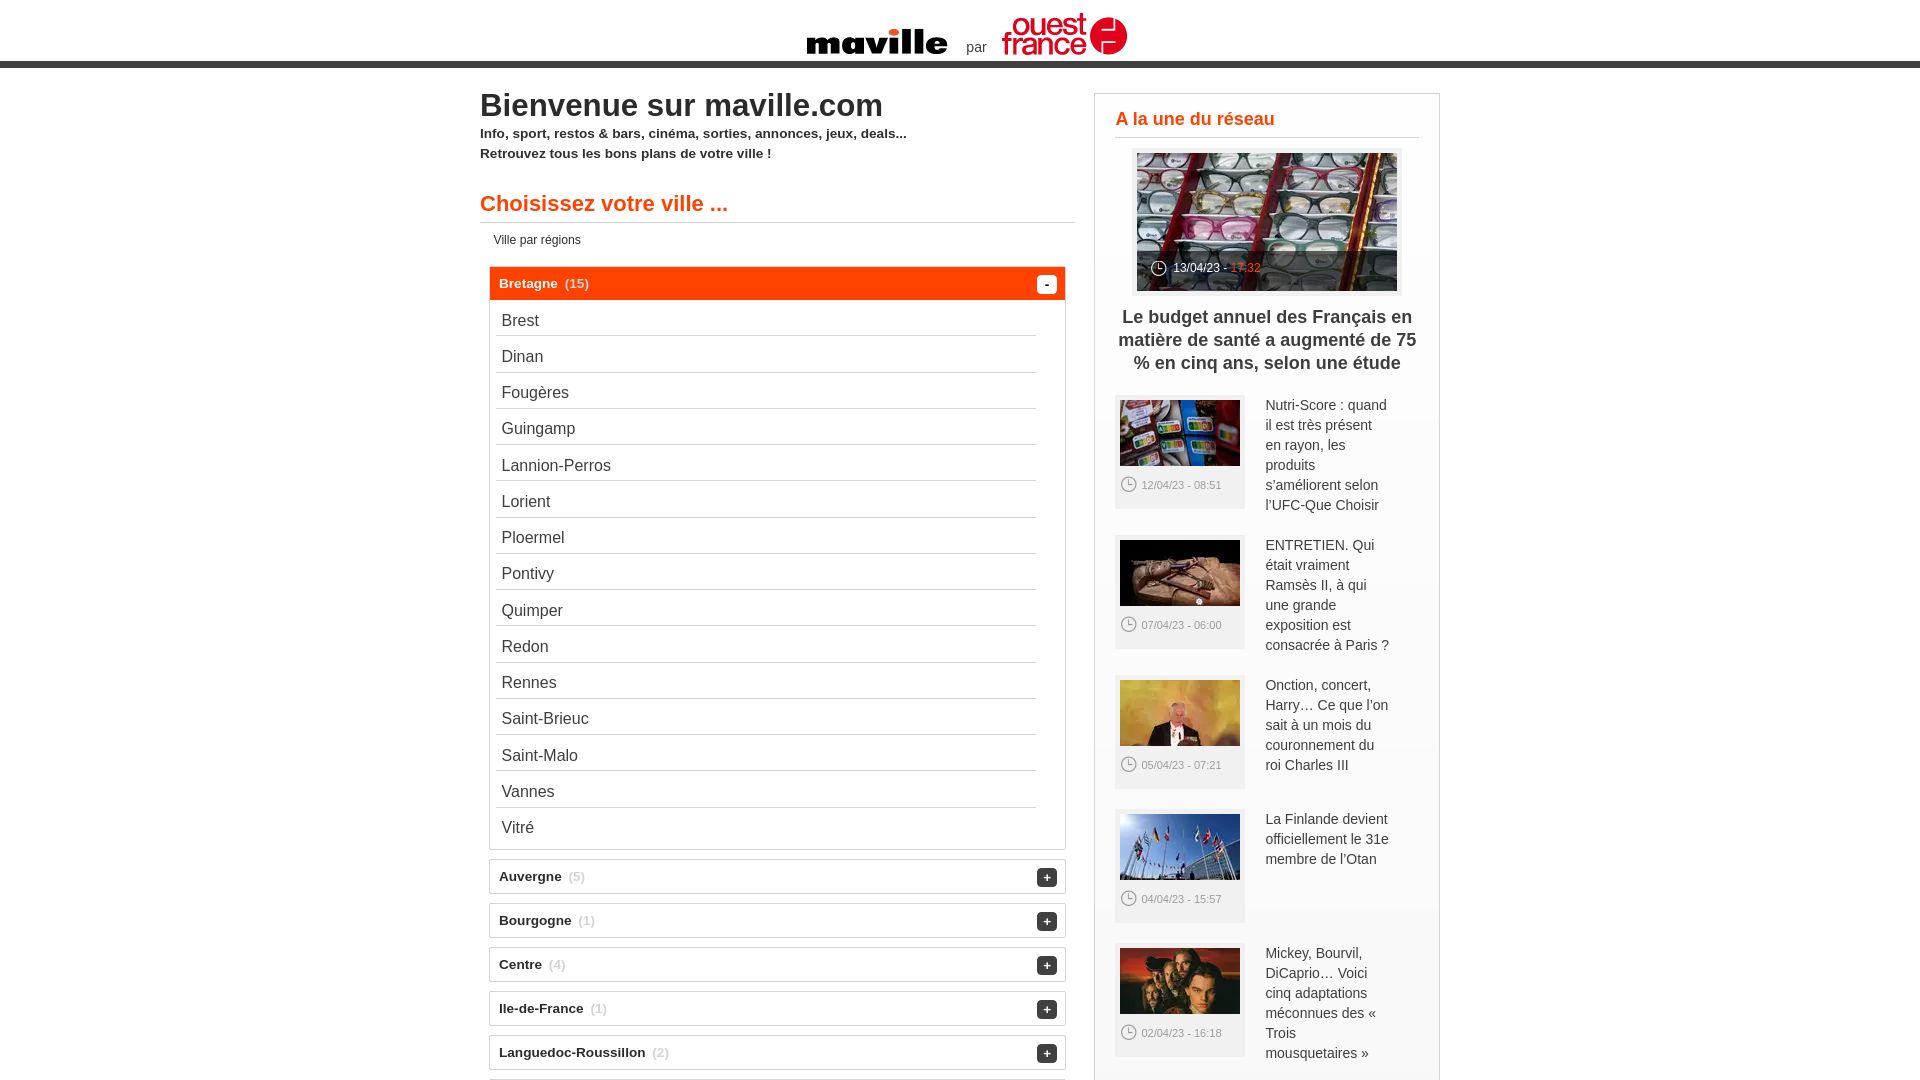 Website status maville.com is   ONLINE